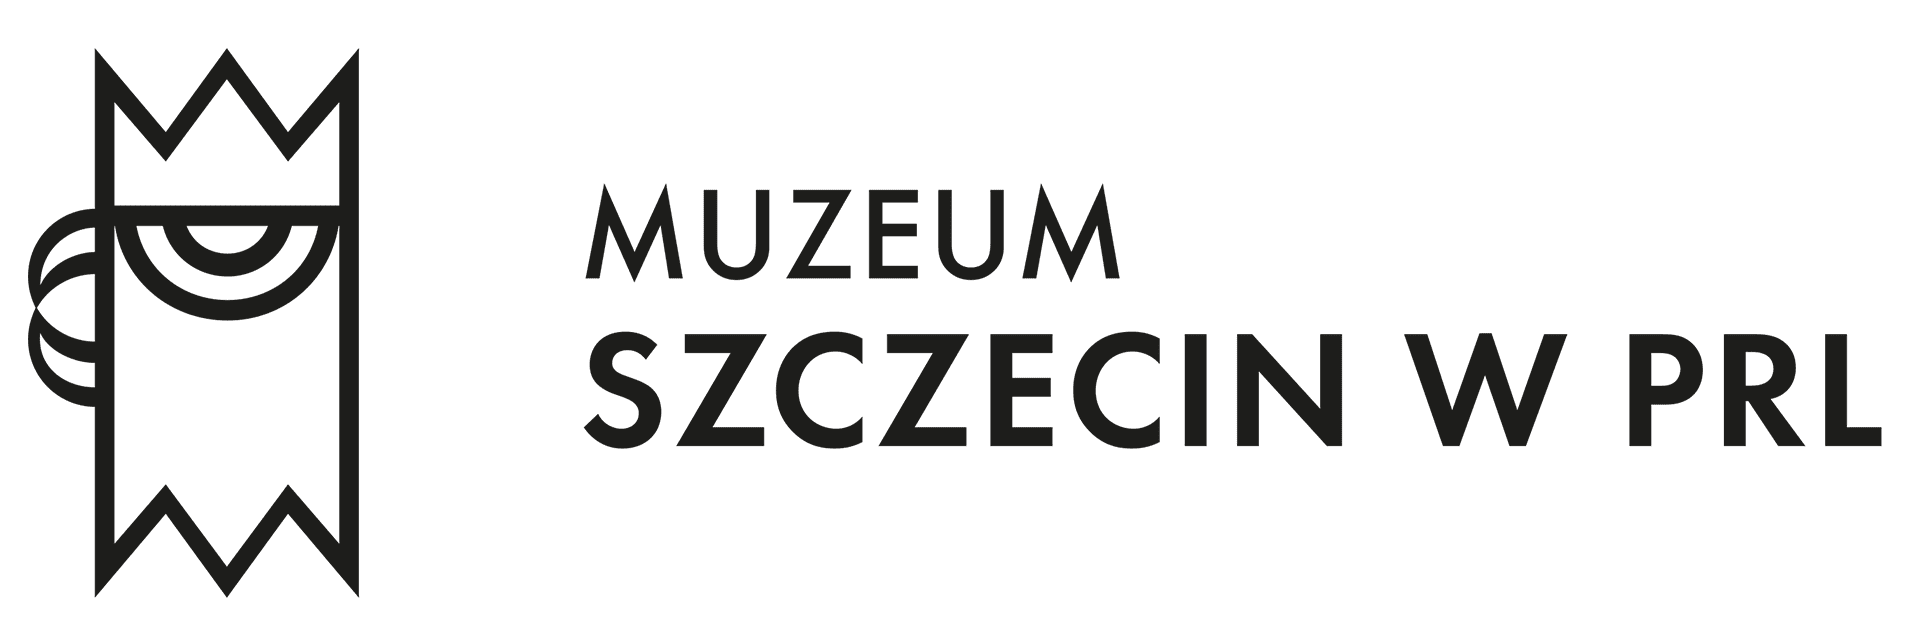 Muzeum Szczecin w PRL